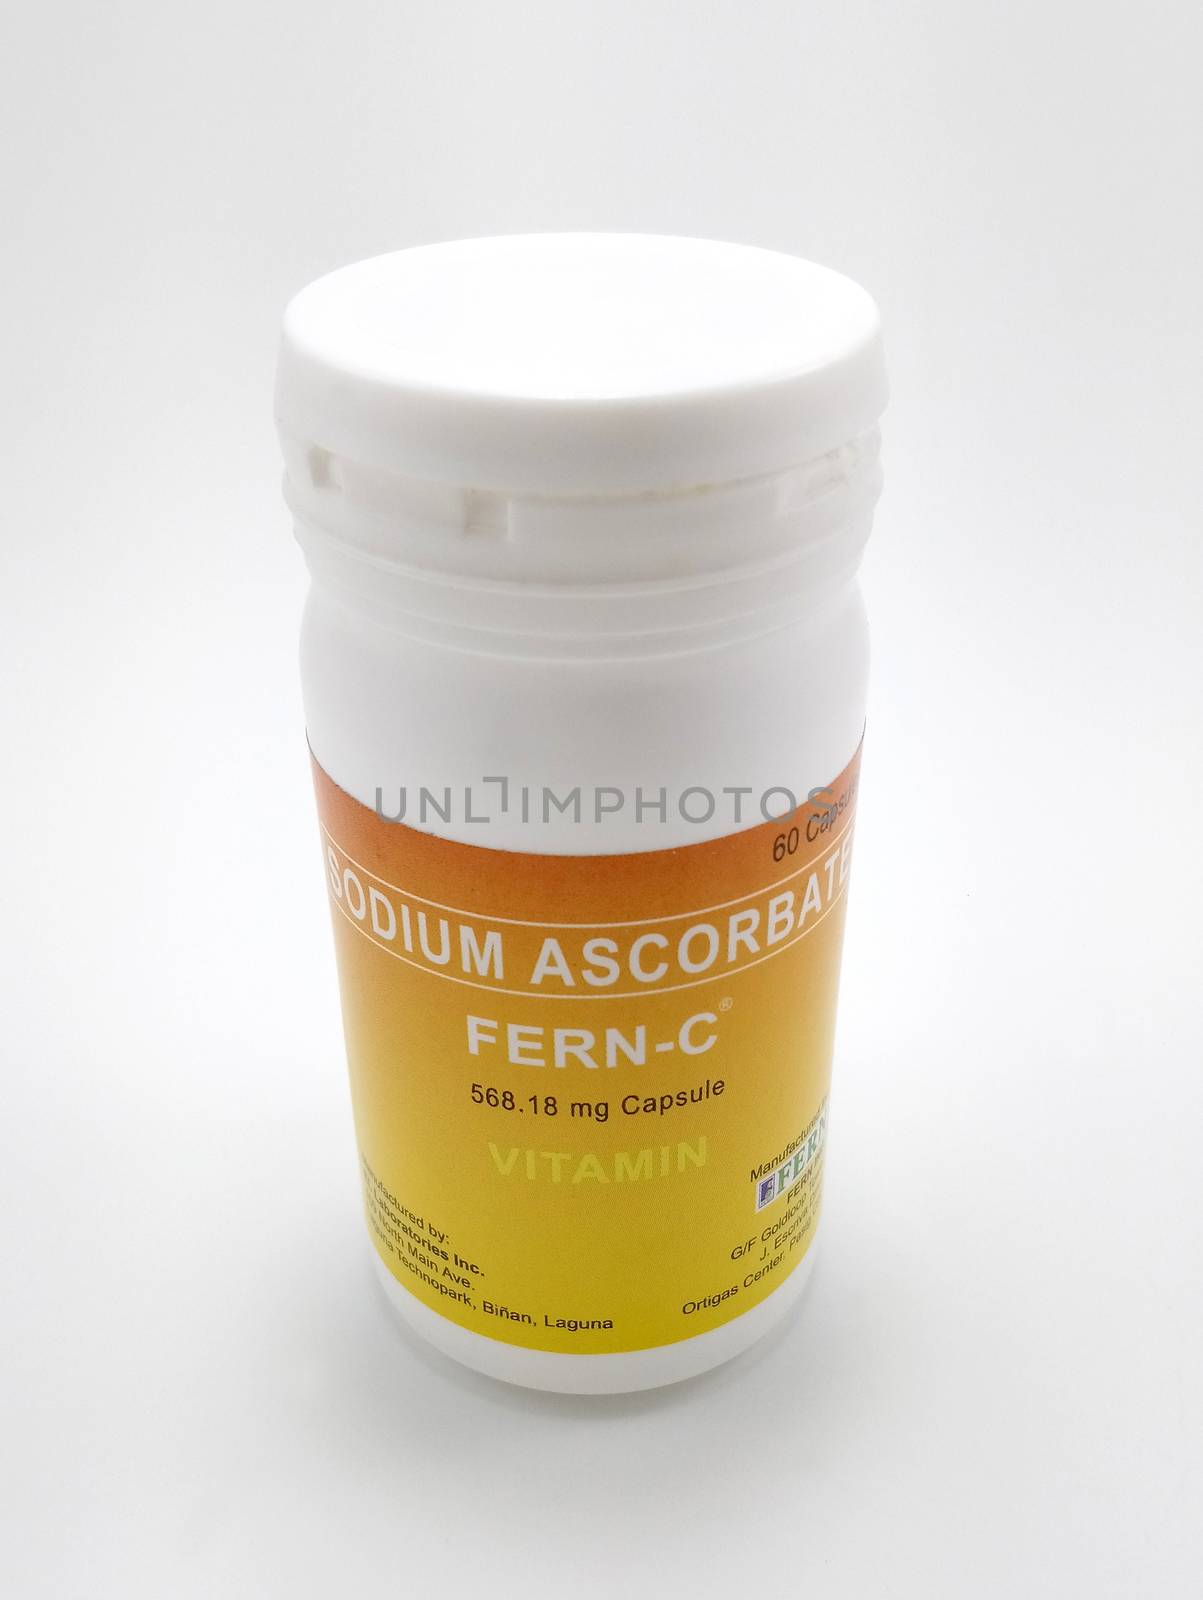 MANILA, PH - JUNE 23 - Fern C sodium ascorbate vitamin c on June 23, 2020 in Manila, Philippines.